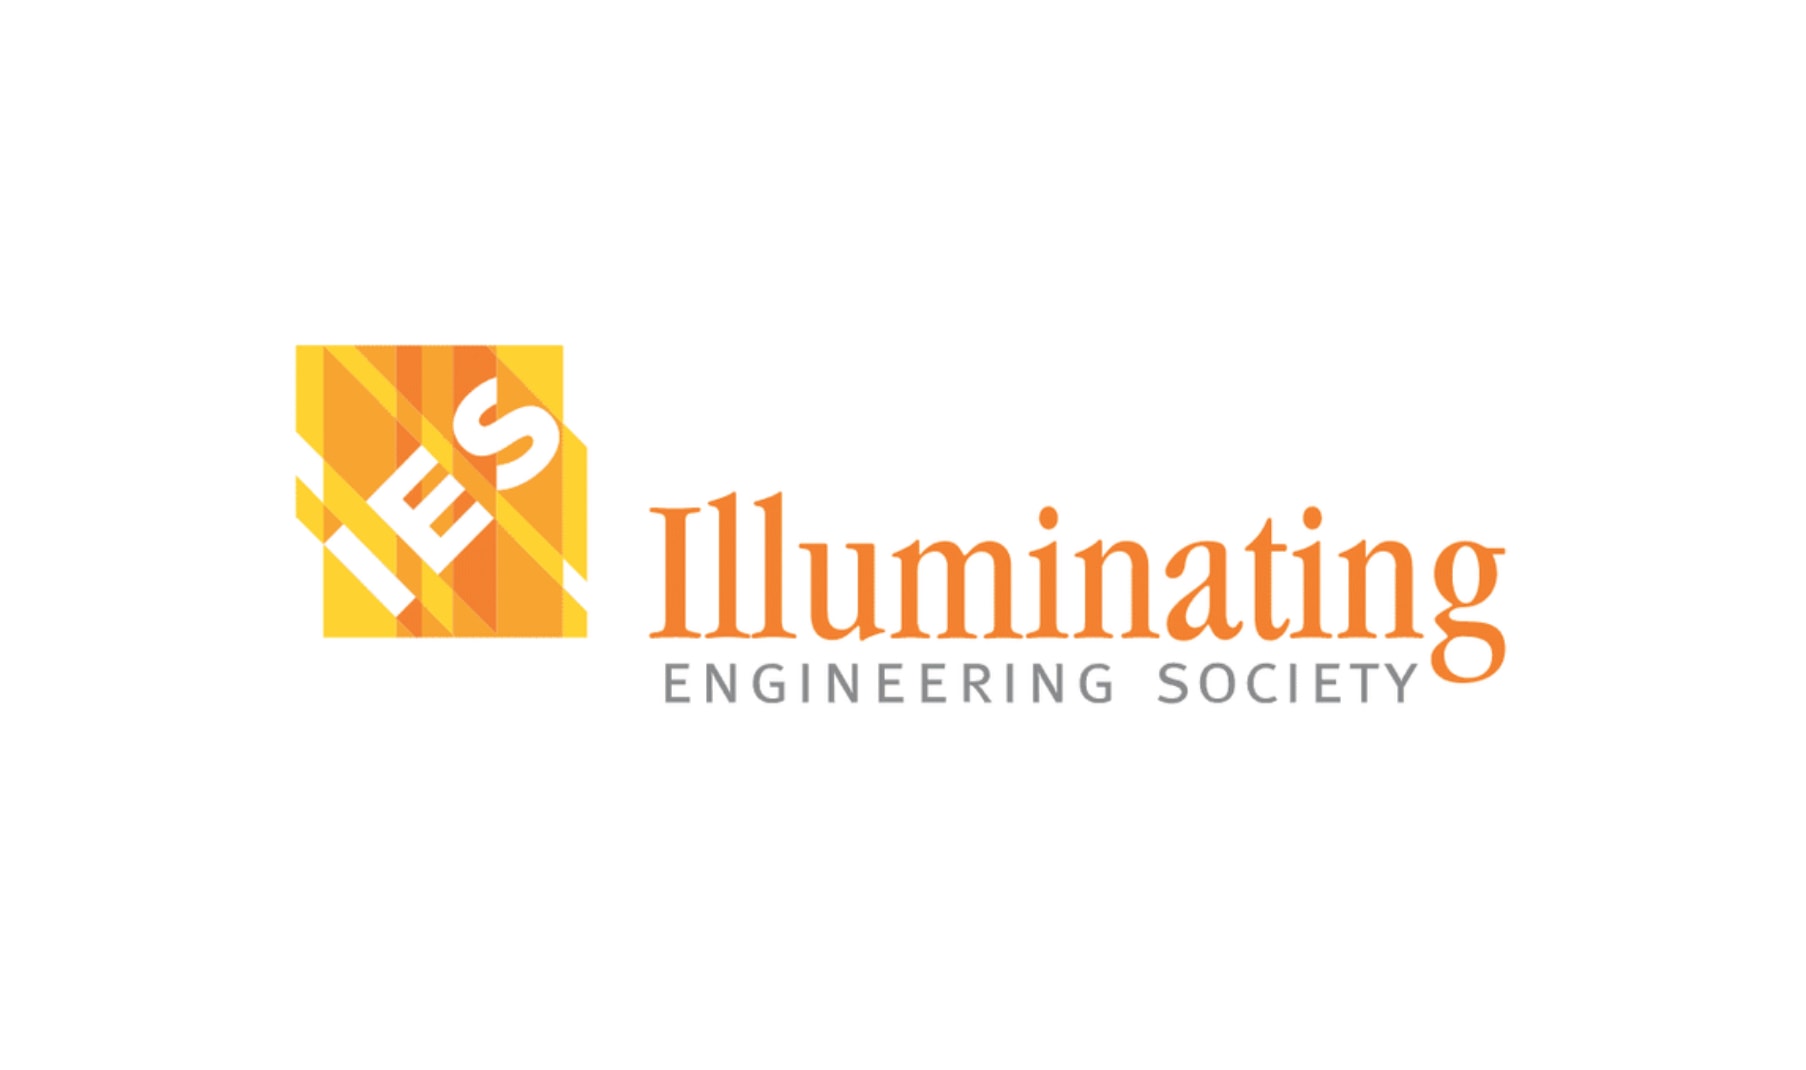 Illuminating Engineering Society logo